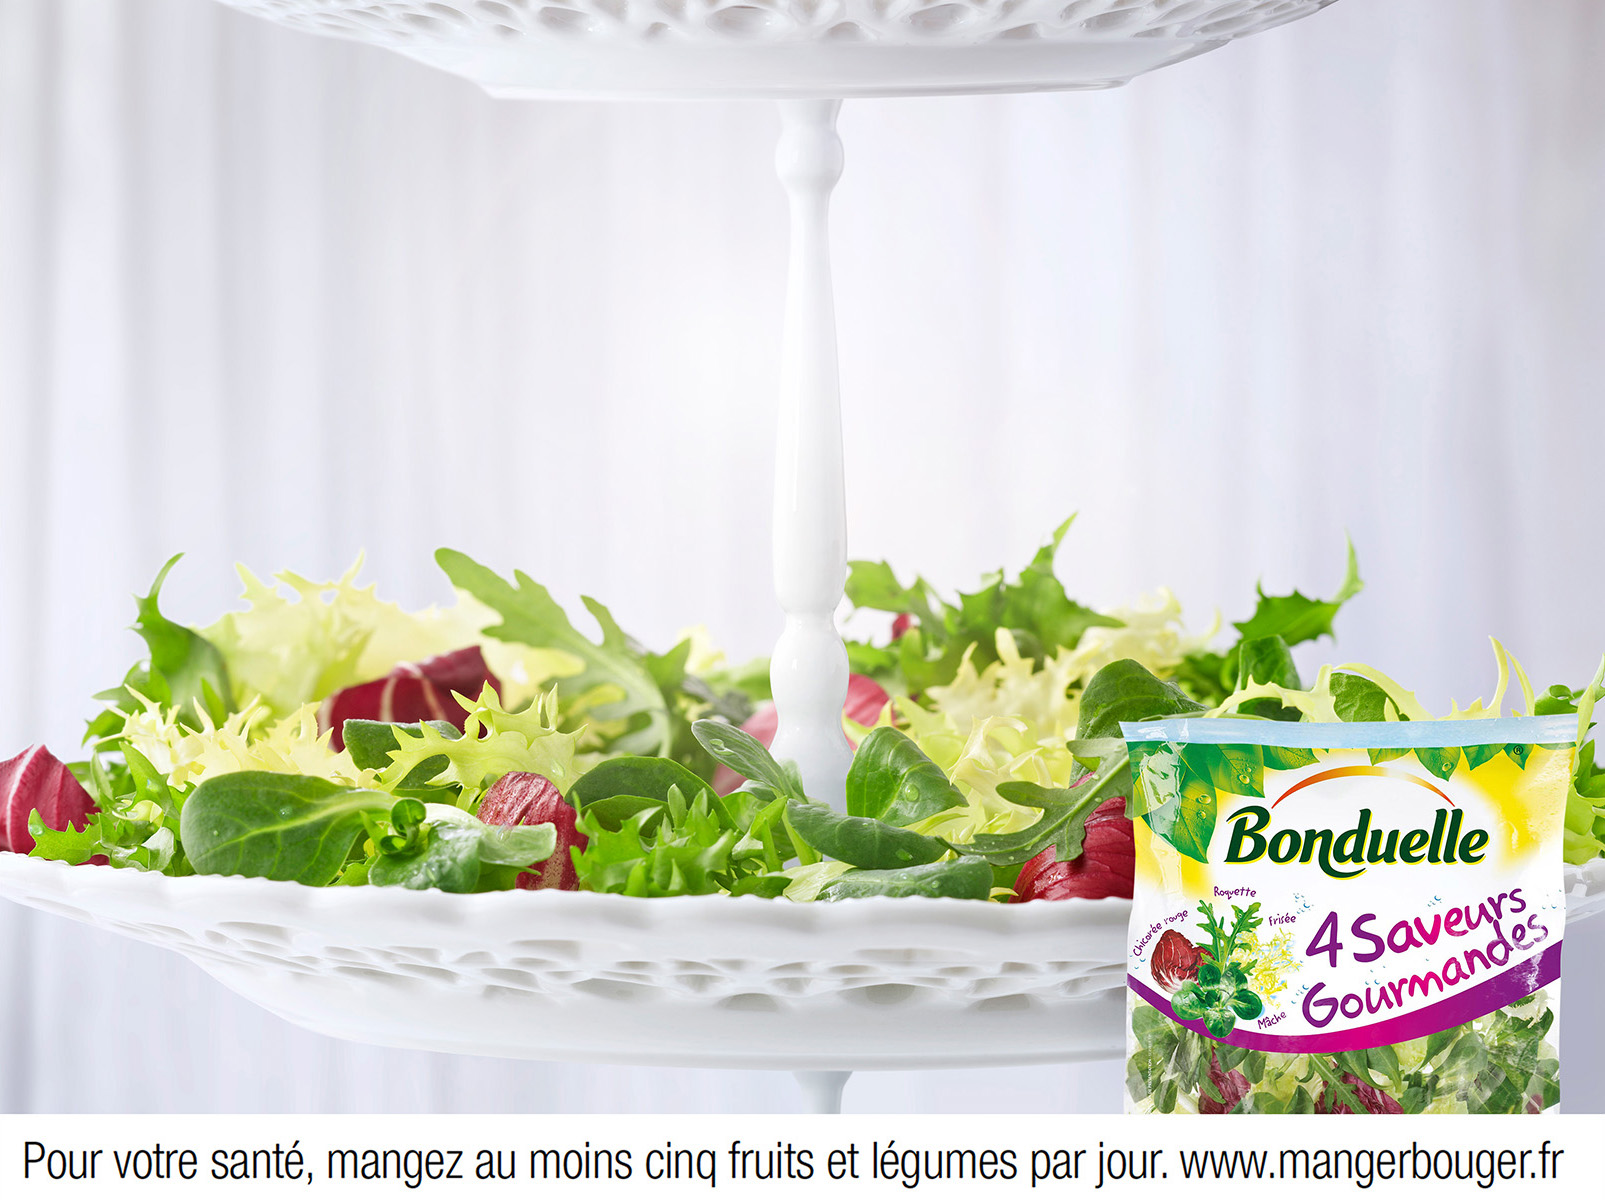 Campagne publicitaire, affichage 4x3, Bonduelle - Salade 4 Saveurs Gourmande